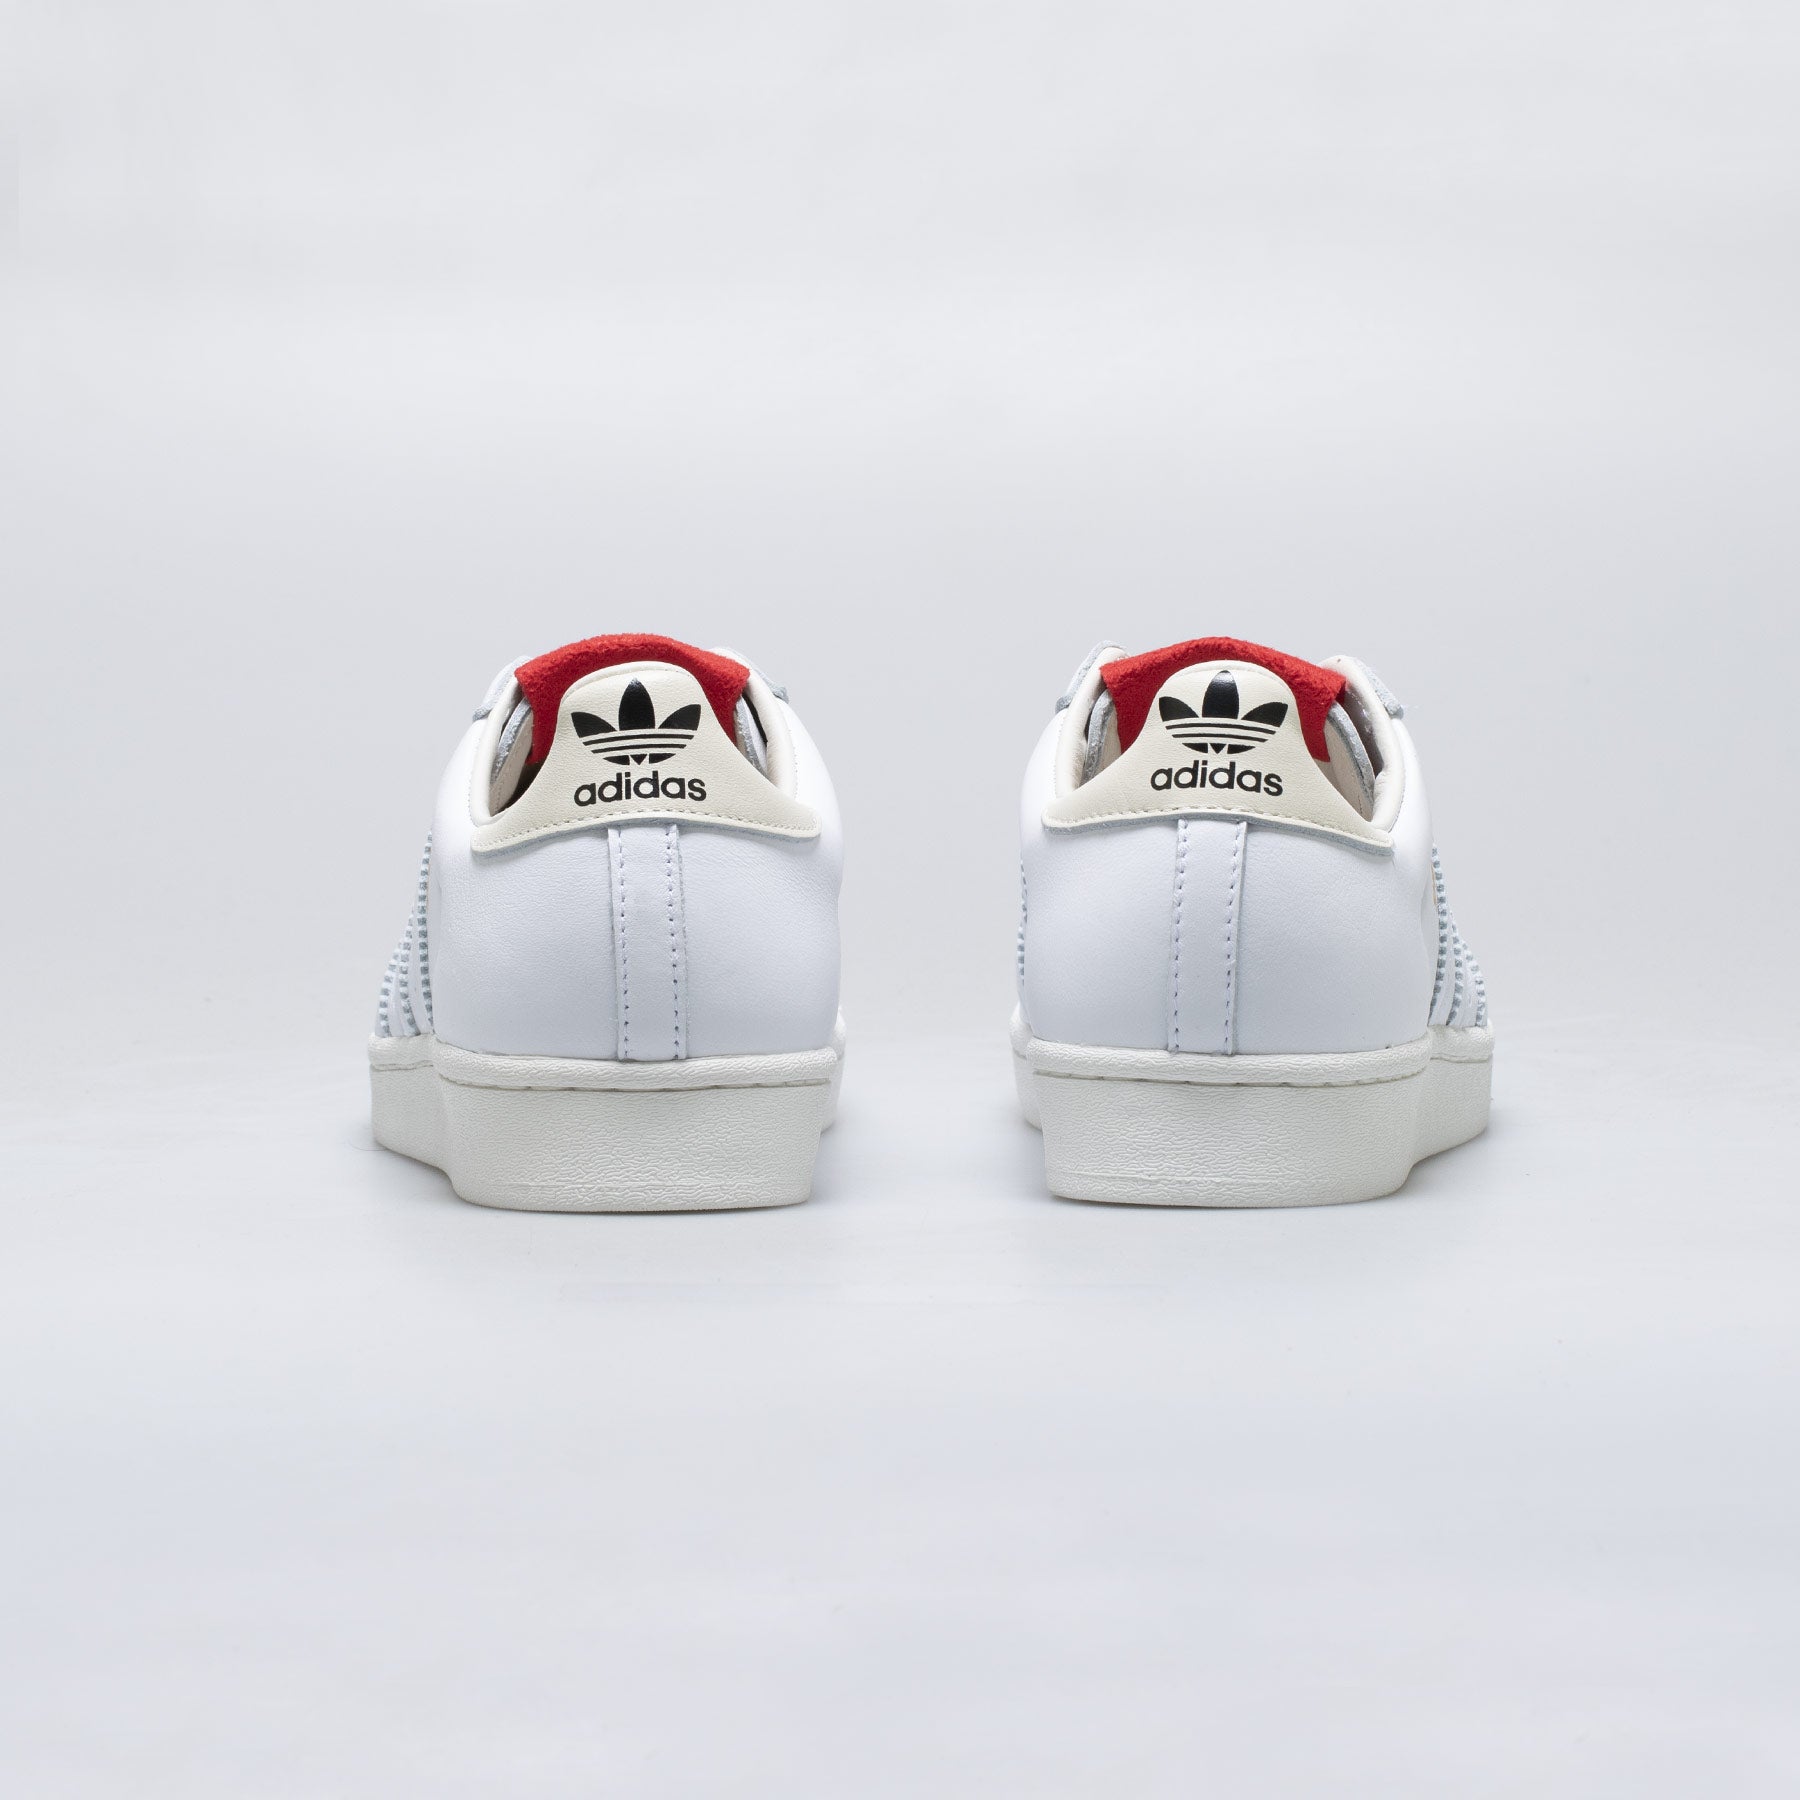 Adidas x 424 Shelltoe White & Red